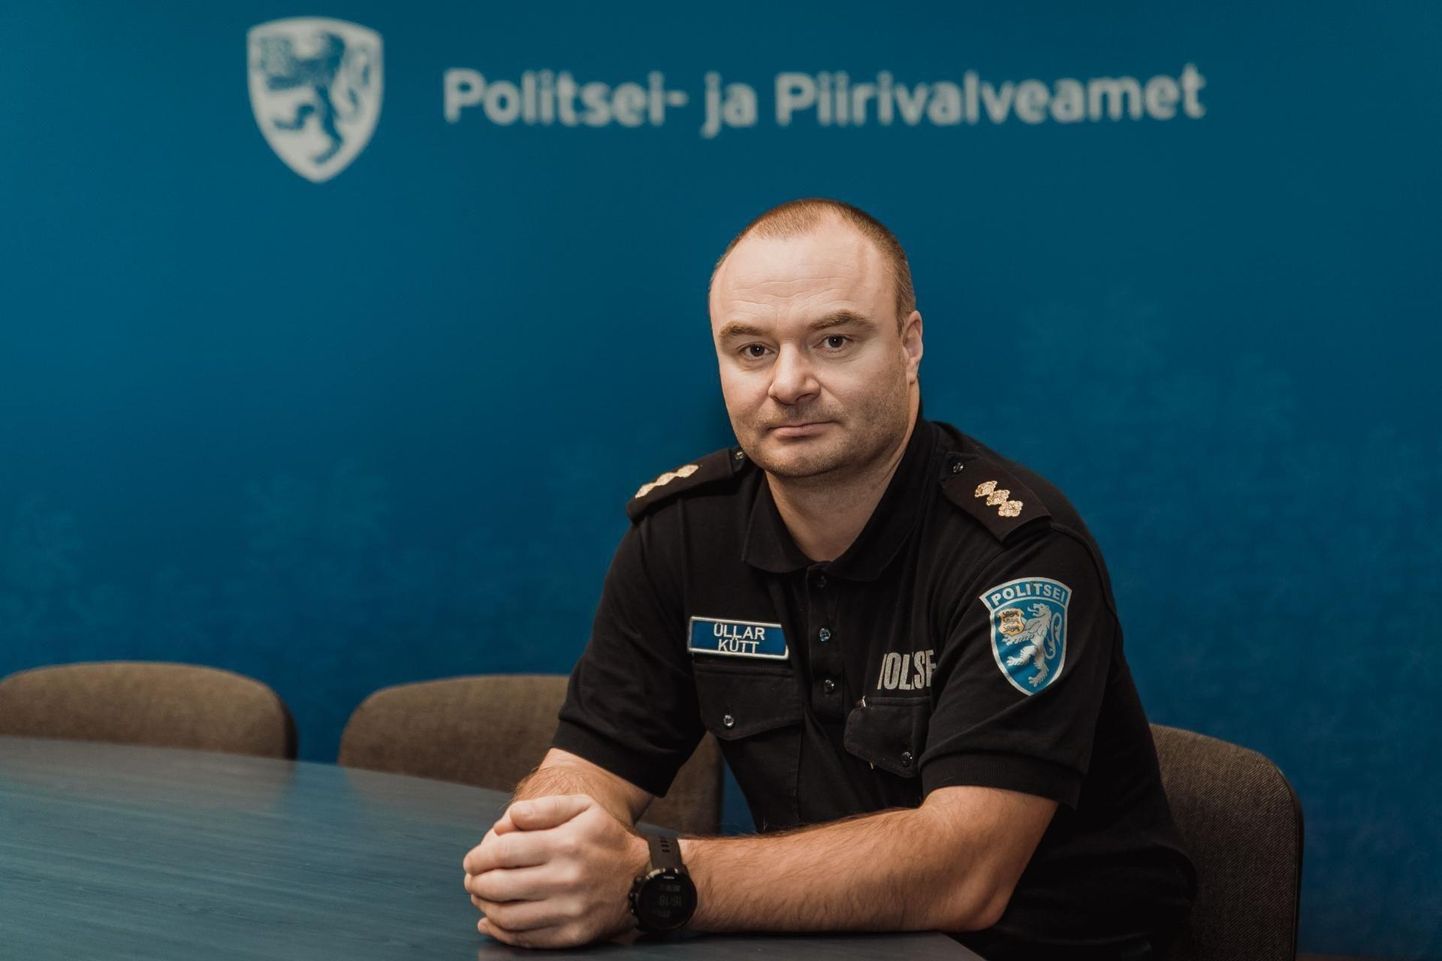 Pärnu politseijaoskonna juhi Üllar Küti sõnutsi on politsei tänavustel pühadel tavapärasest valvsam.